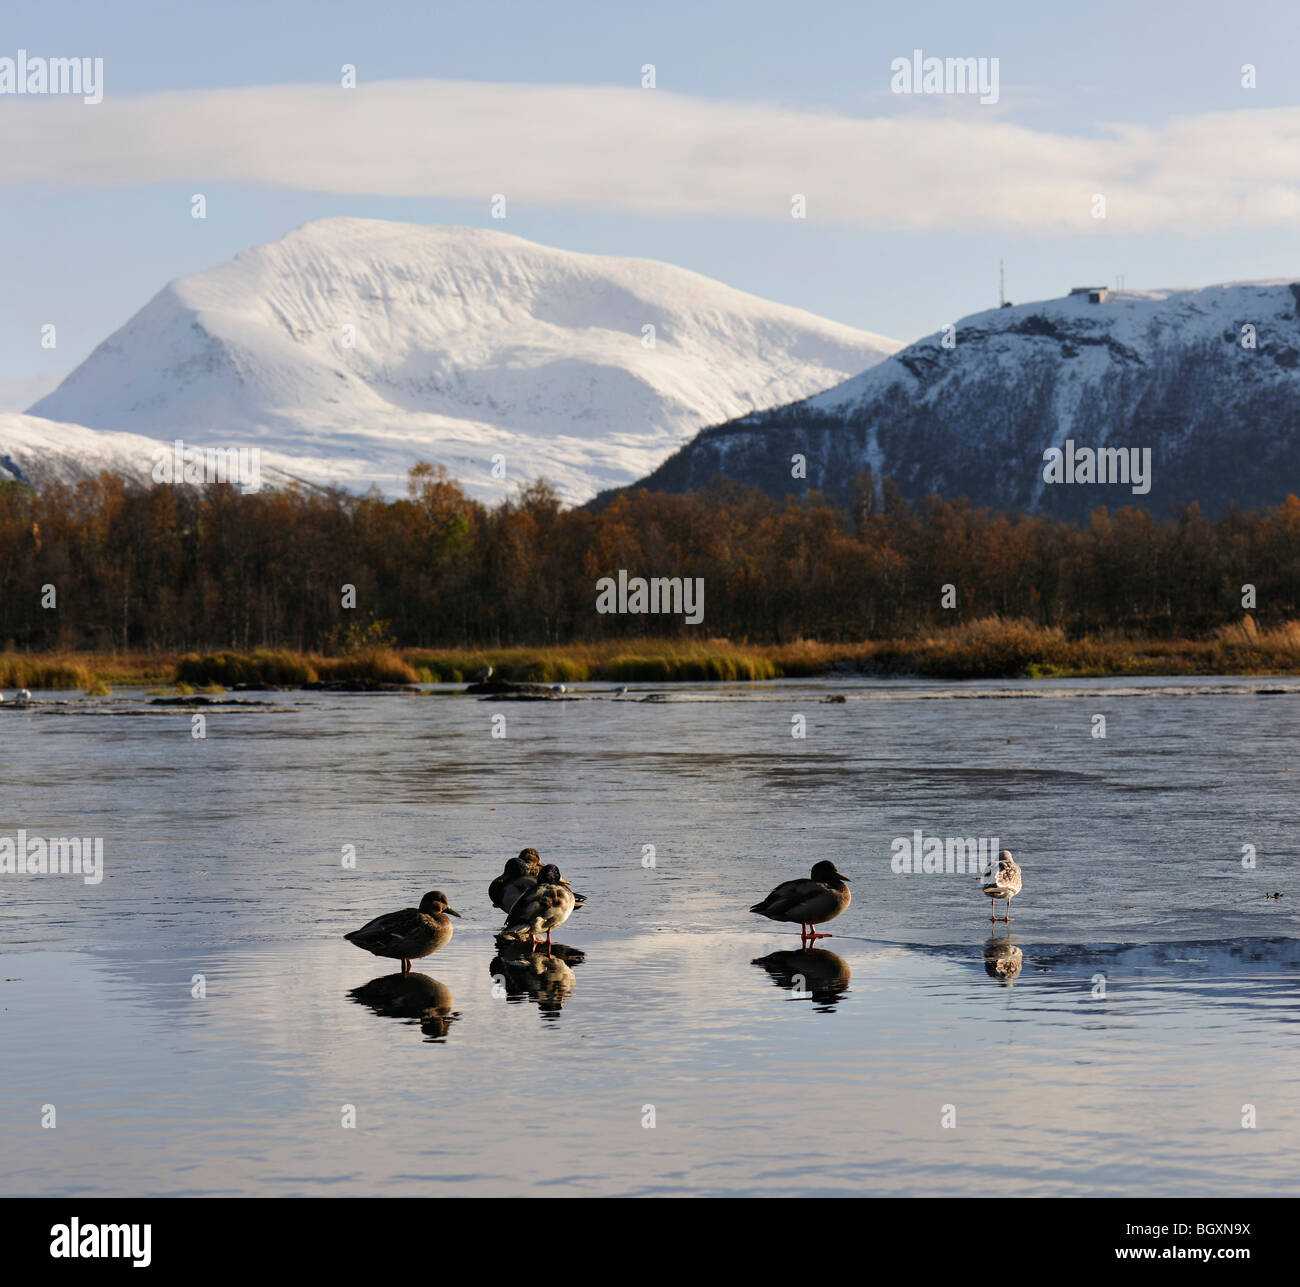 Les canards colverts et une seagullon une mince surface de glace sur un lac. Des réflexions, des images, des oiseaux. Tromso, Norvège du Nord. Banque D'Images